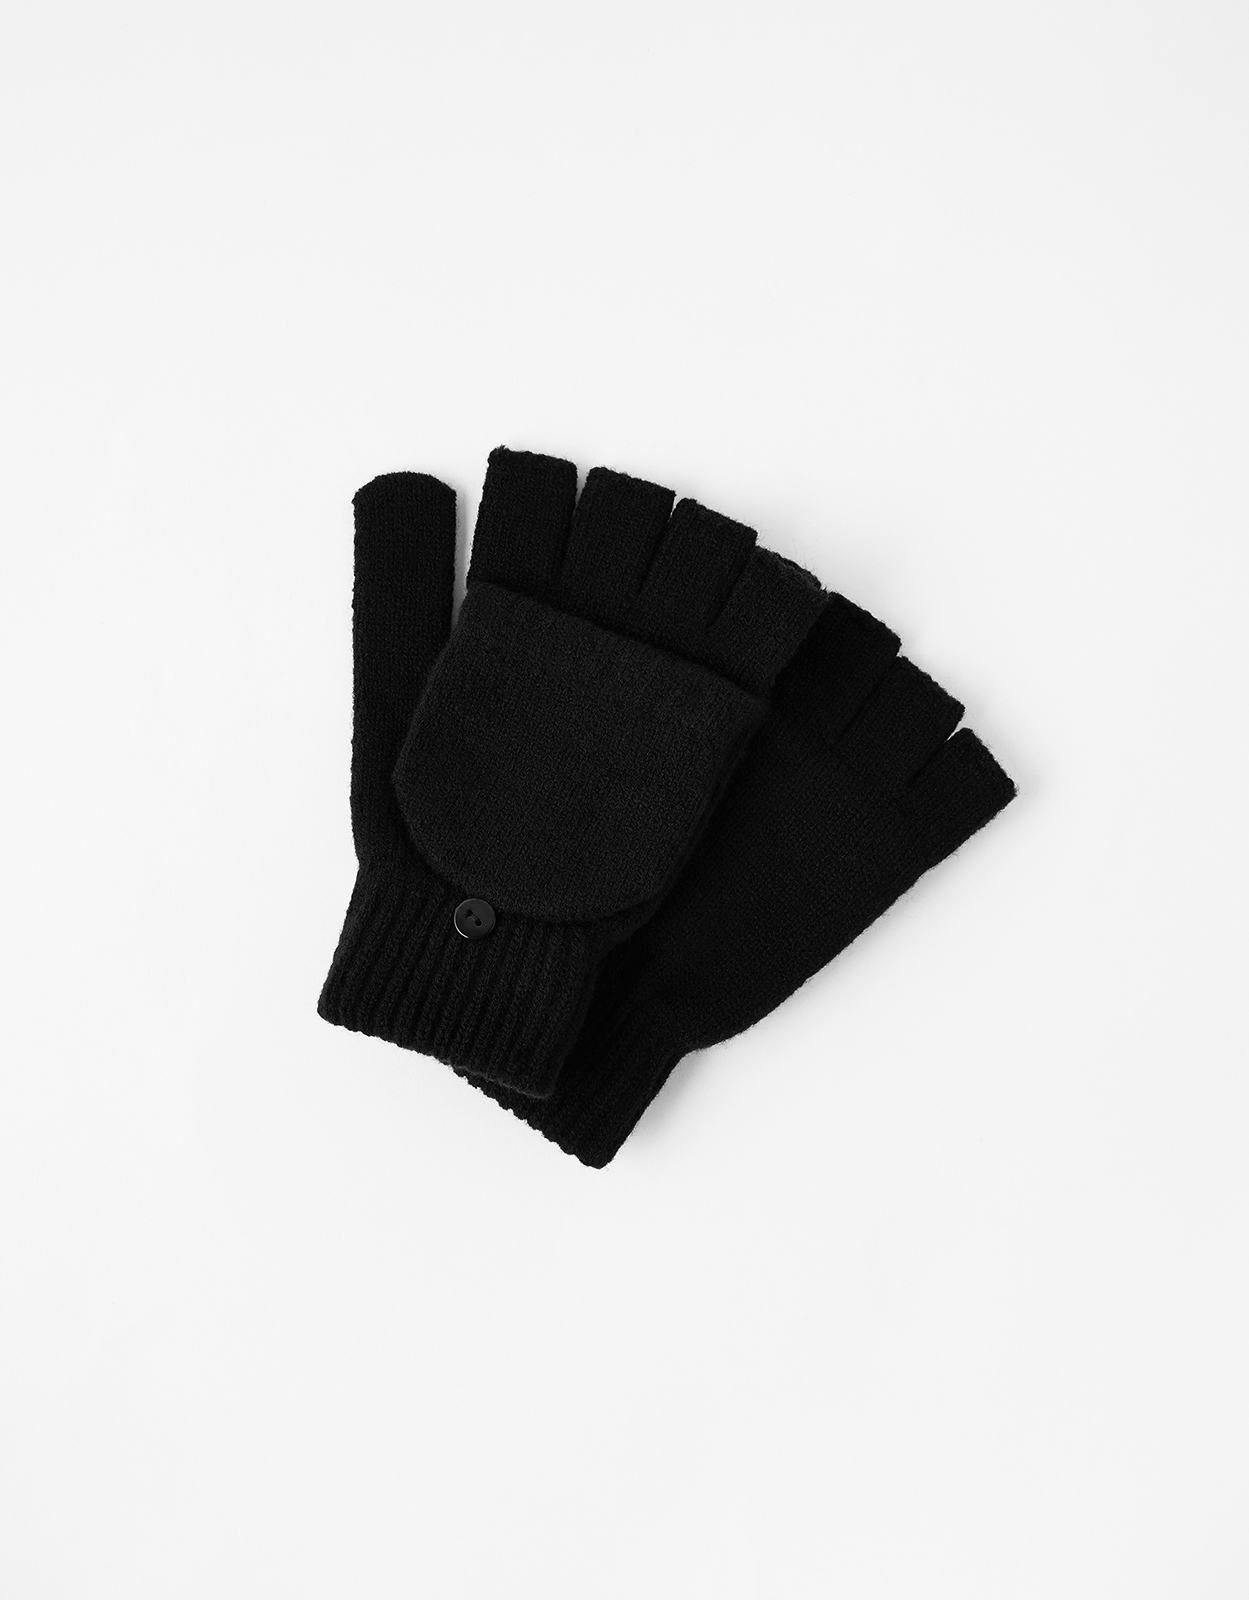 Accessorize Women's Black Acrylic Plain Capped Gloves, Size: 20x8cm